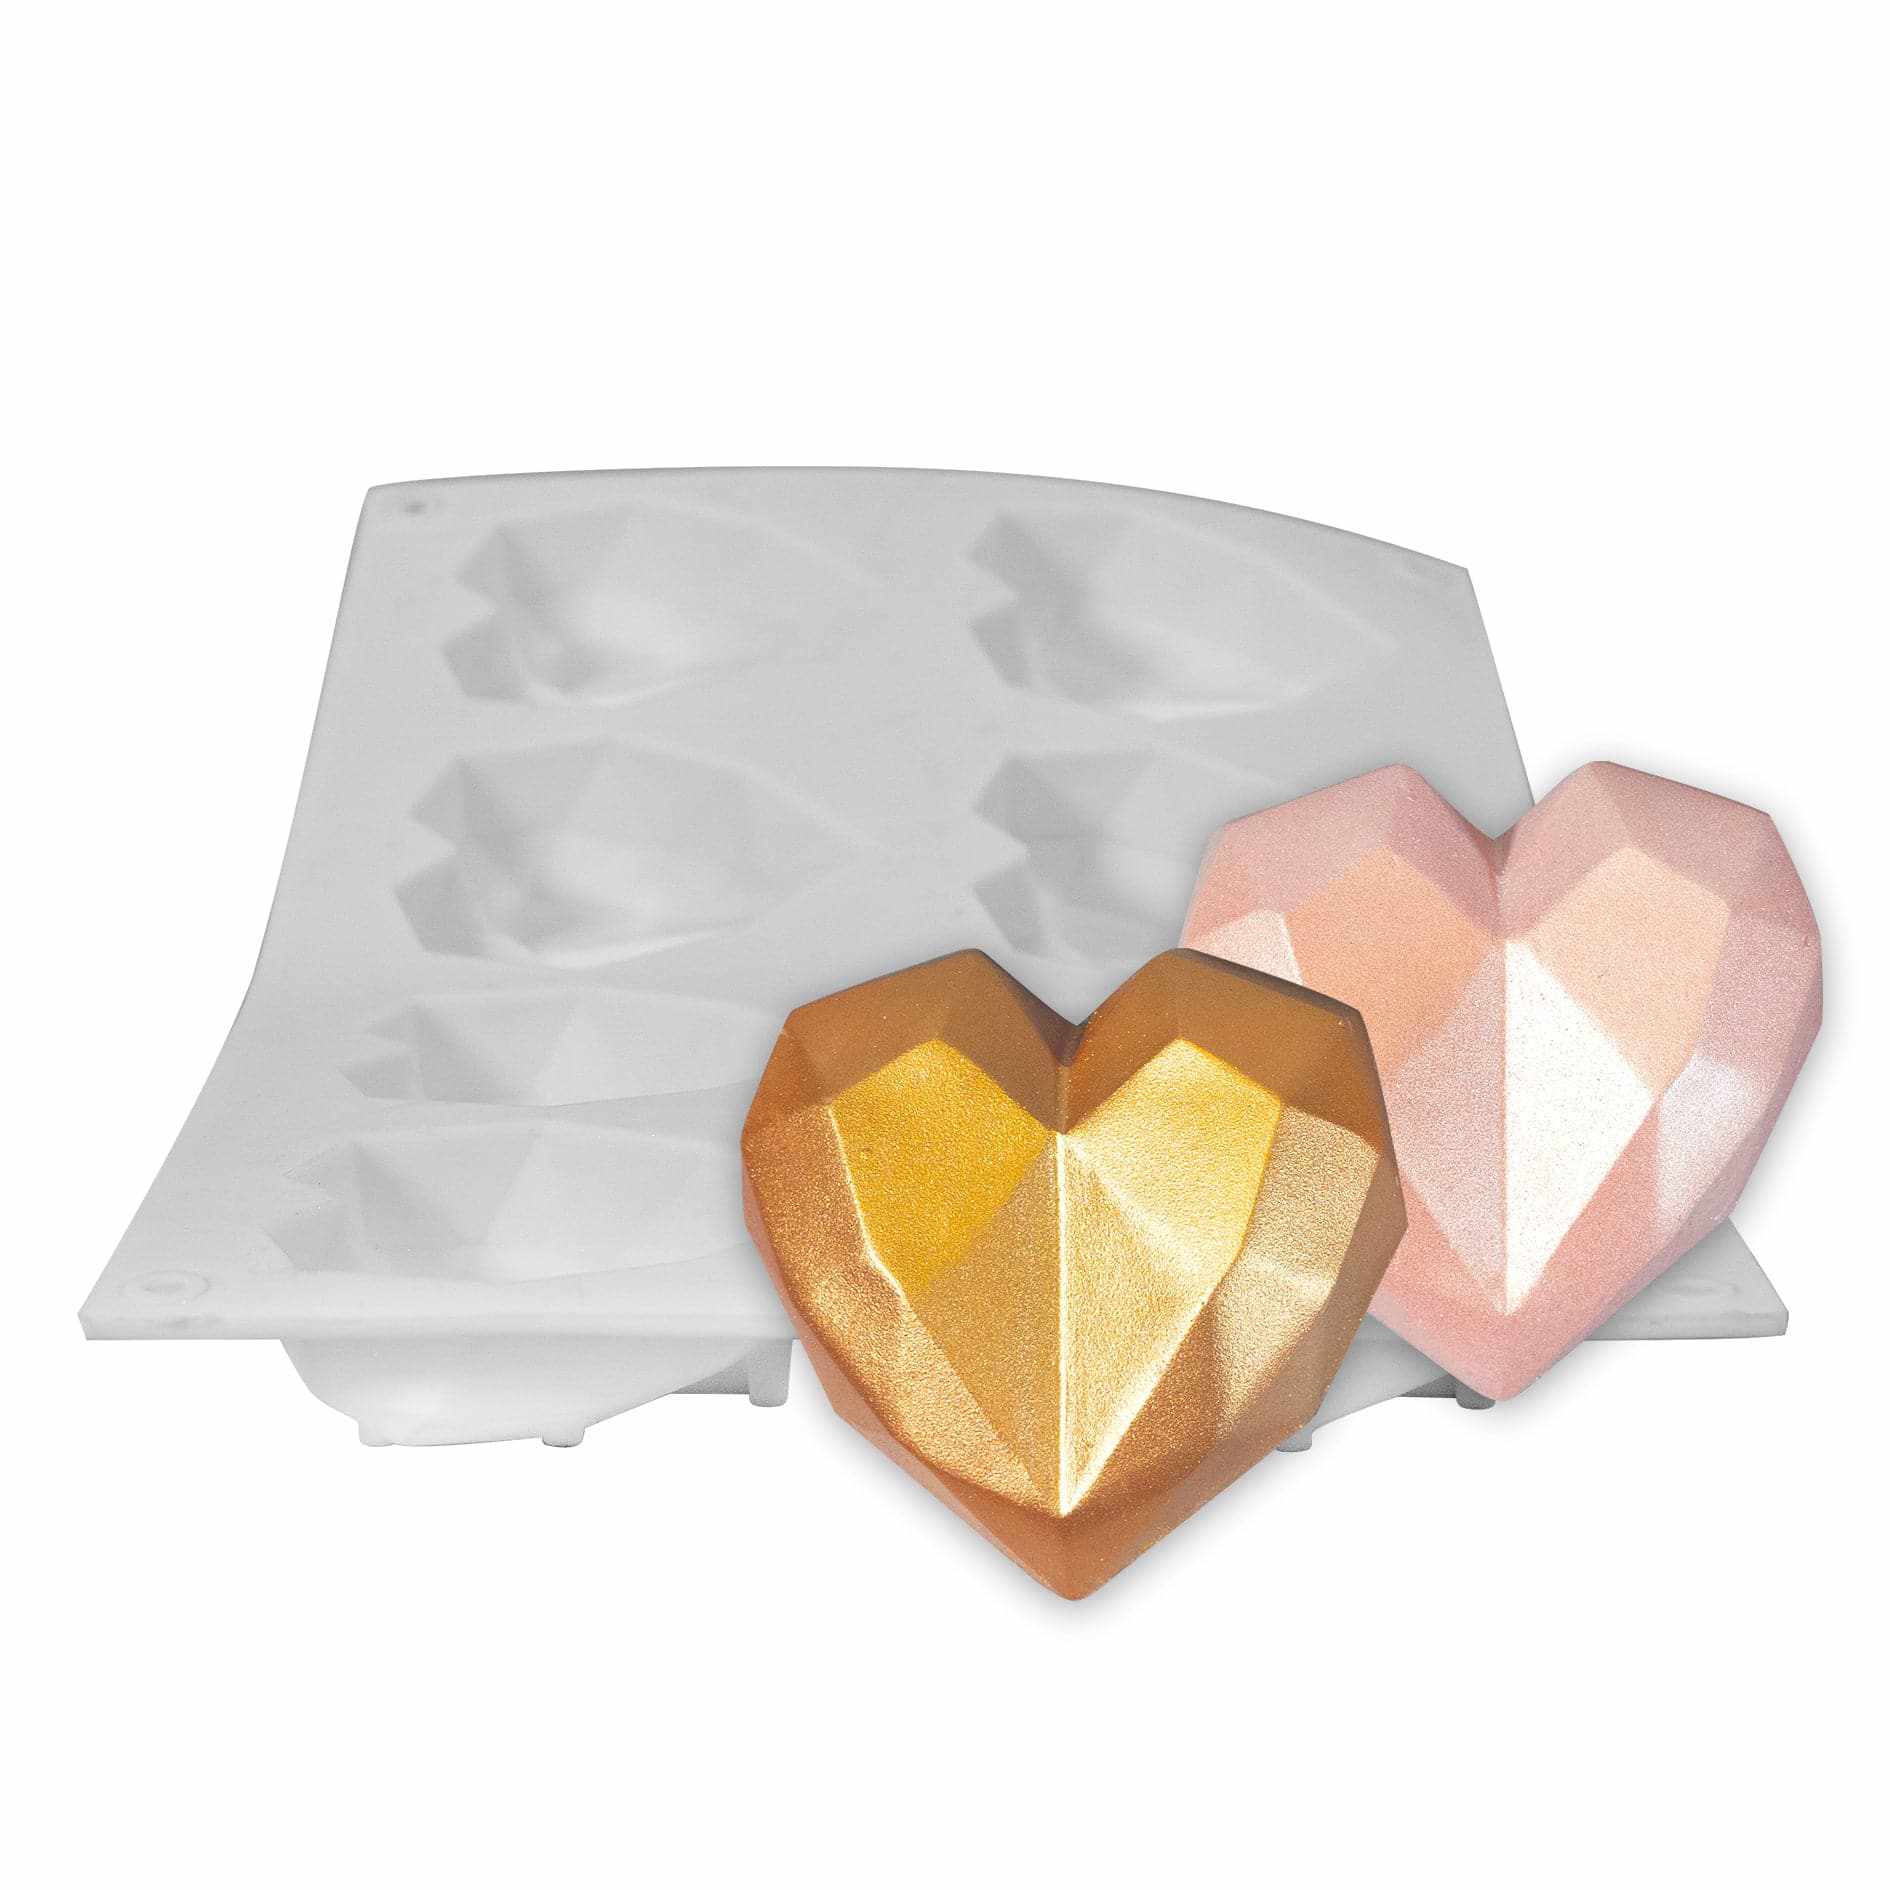 DIAMOND HEART Small Silicone Mold